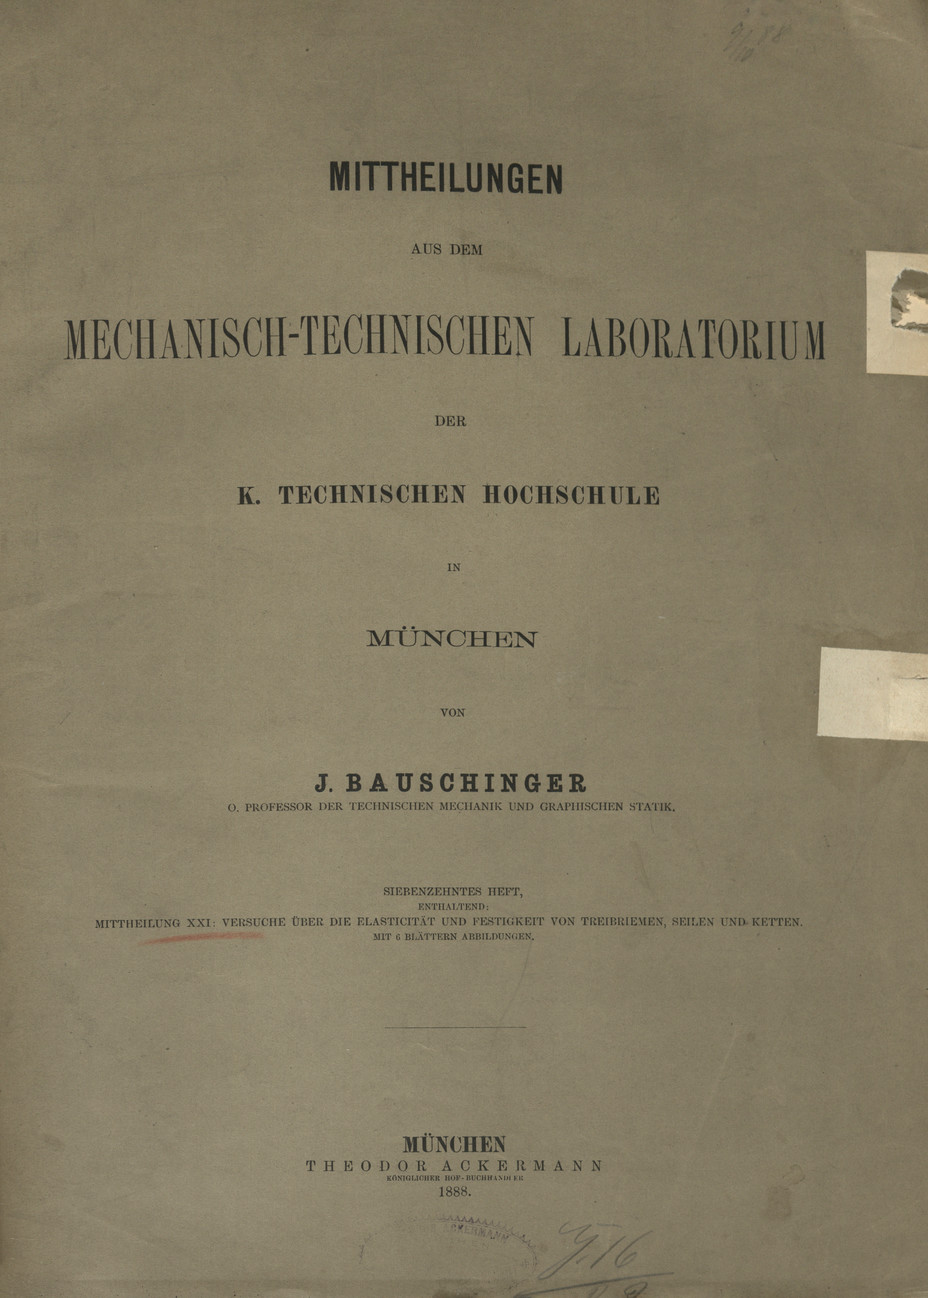 Mitteilungen aus dem Mechanisch -Technischen Laboratorium der K. Technischen Hochschule in München, H. 17